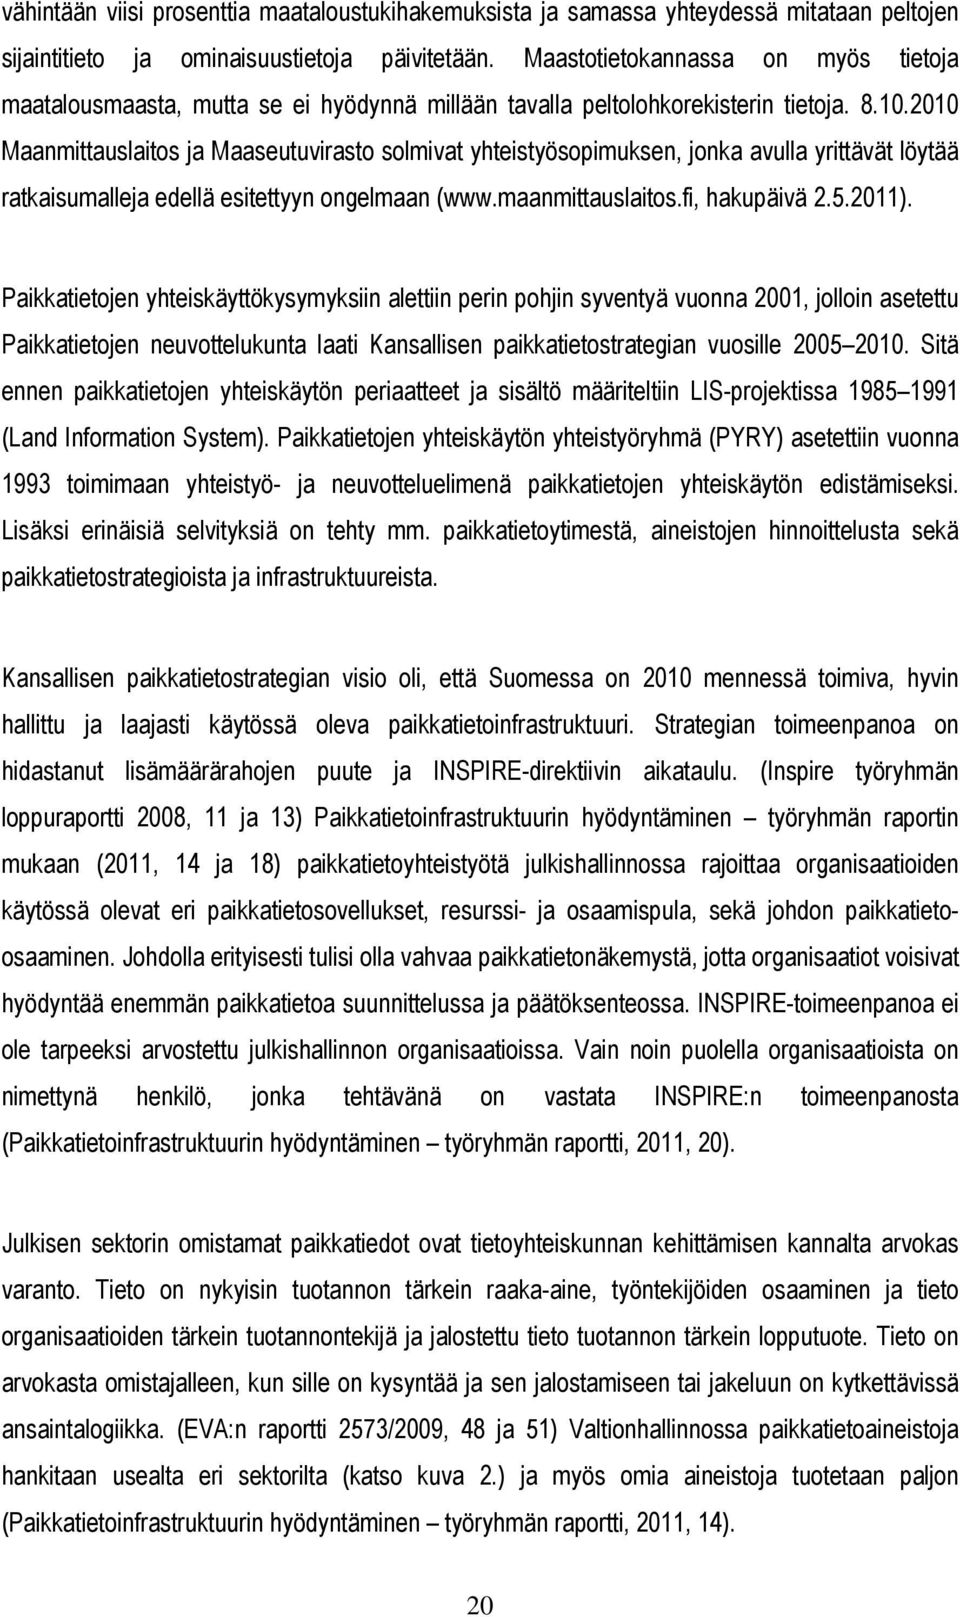 2010 Maanmittauslaitos ja Maaseutuvirasto solmivat yhteistyösopimuksen, jonka avulla yrittävät löytää ratkaisumalleja edellä esitettyyn ongelmaan (www.maanmittauslaitos.fi, hakupäivä 2.5.2011).